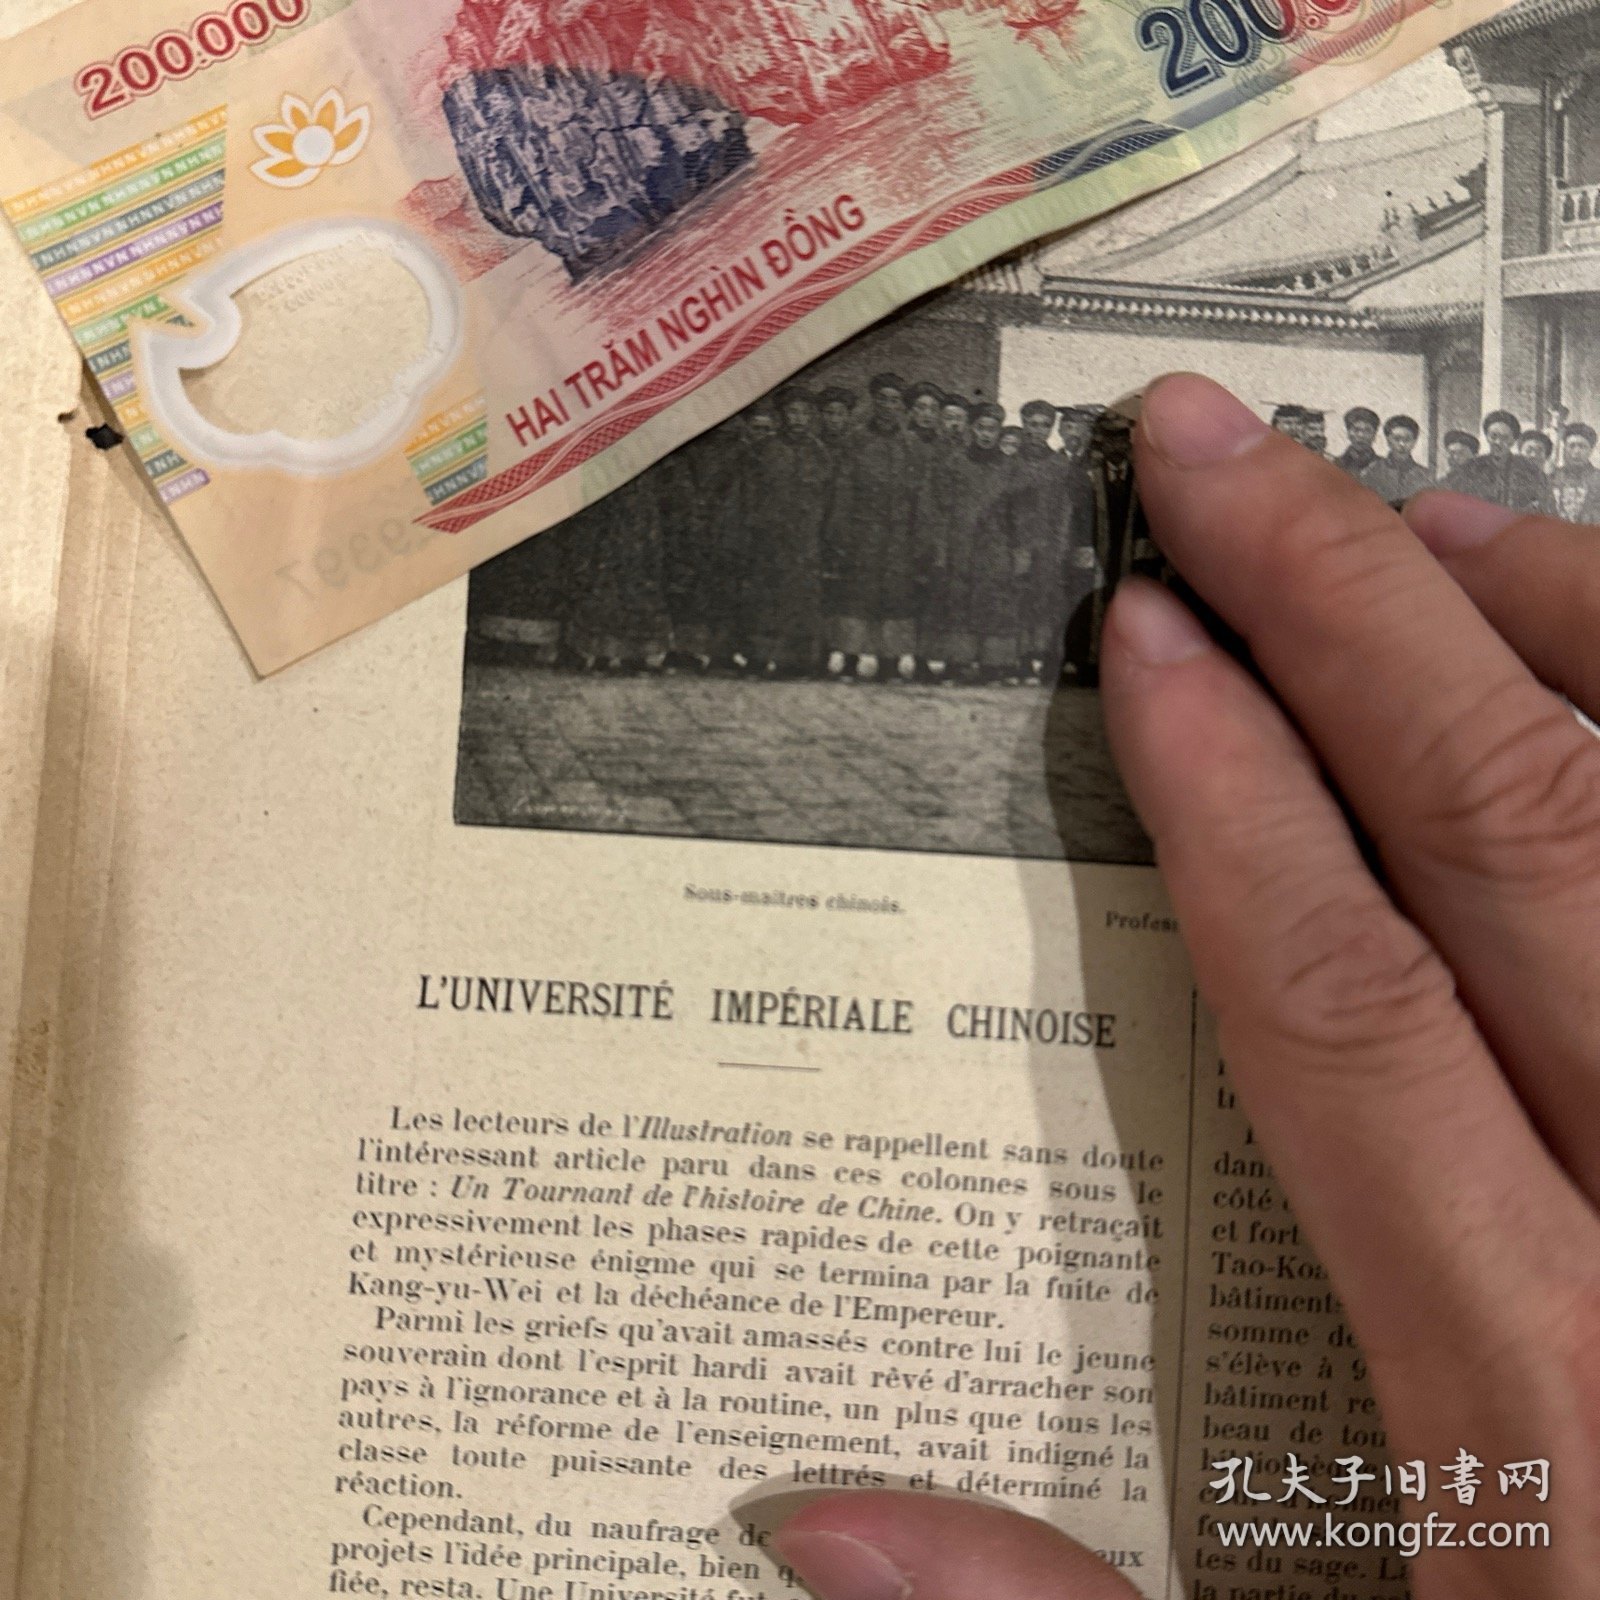 1899年 京师大学堂 北京大学前身 老照片 官员、教授、外籍教授合影 罕见 并且有关于京师大学堂的文字报道 法国老报纸